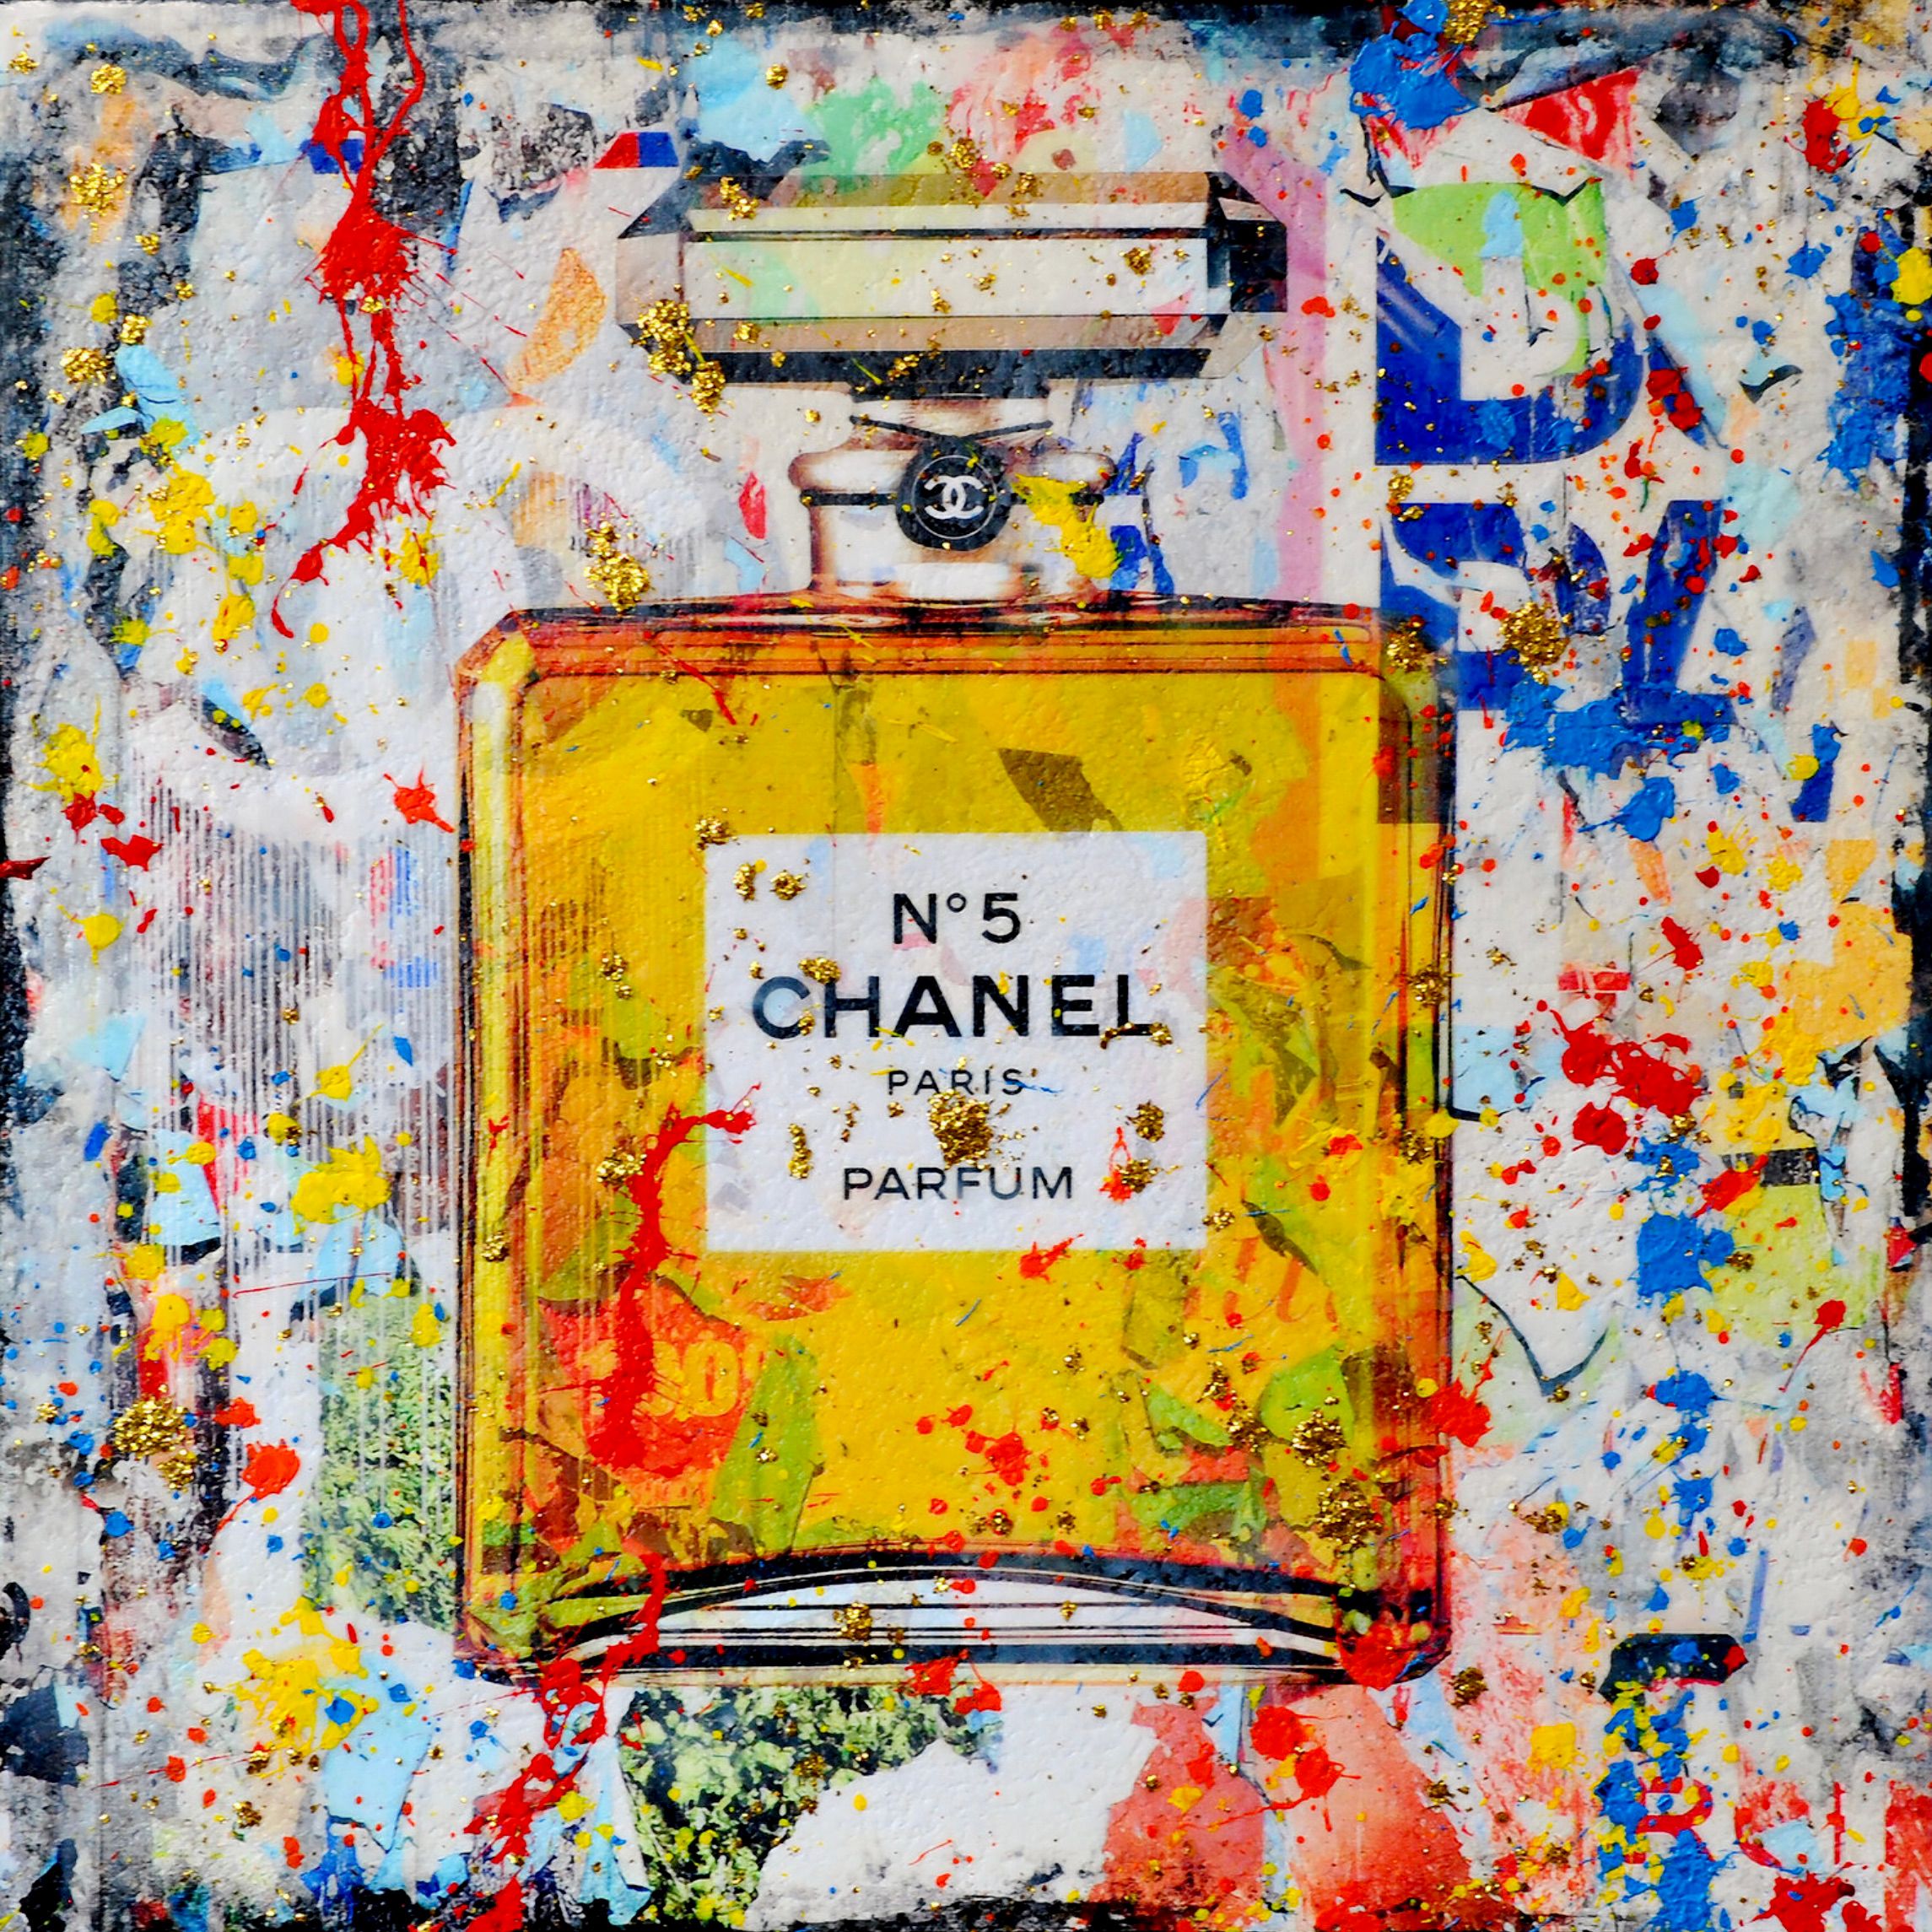 Le "Chanel No.5" de Karin Vermeer est une combinaison numérique et un traitement de photographies, de peintures et de collages pour créer de nouvelles œuvres d'art pop en couleur.